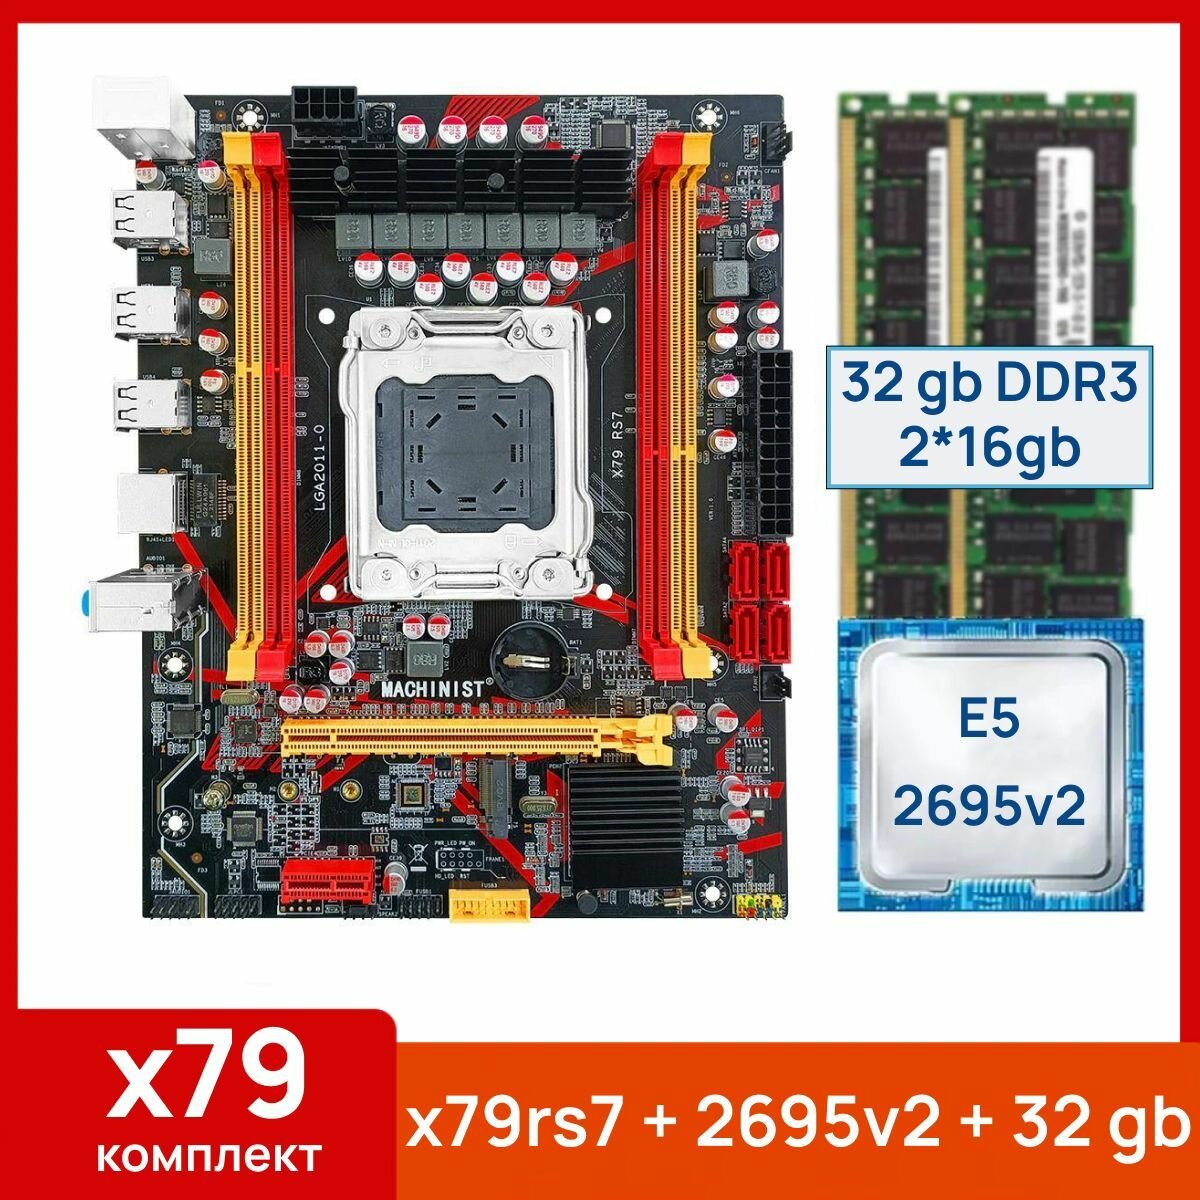 Комплект: Материнская плата Machinist RS-7 + Процессор Xeon E5 2695v2 + 32 gb(2x16gb) DDR3 серверная